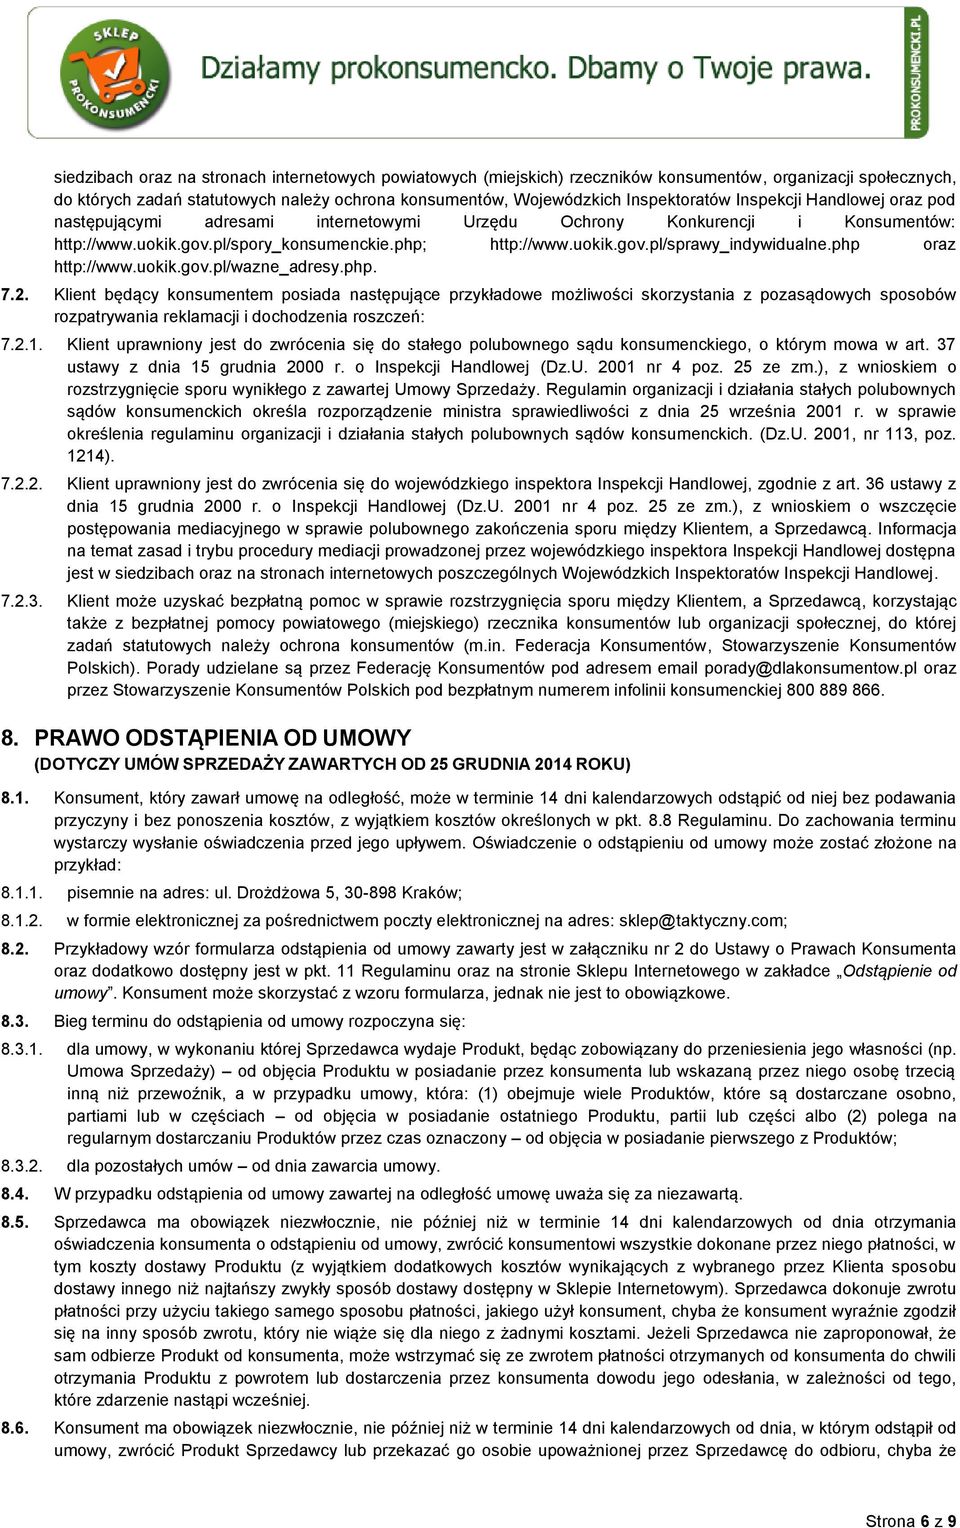 php oraz http://www.uokik.gov.pl/wazne_adresy.php. 7.2.